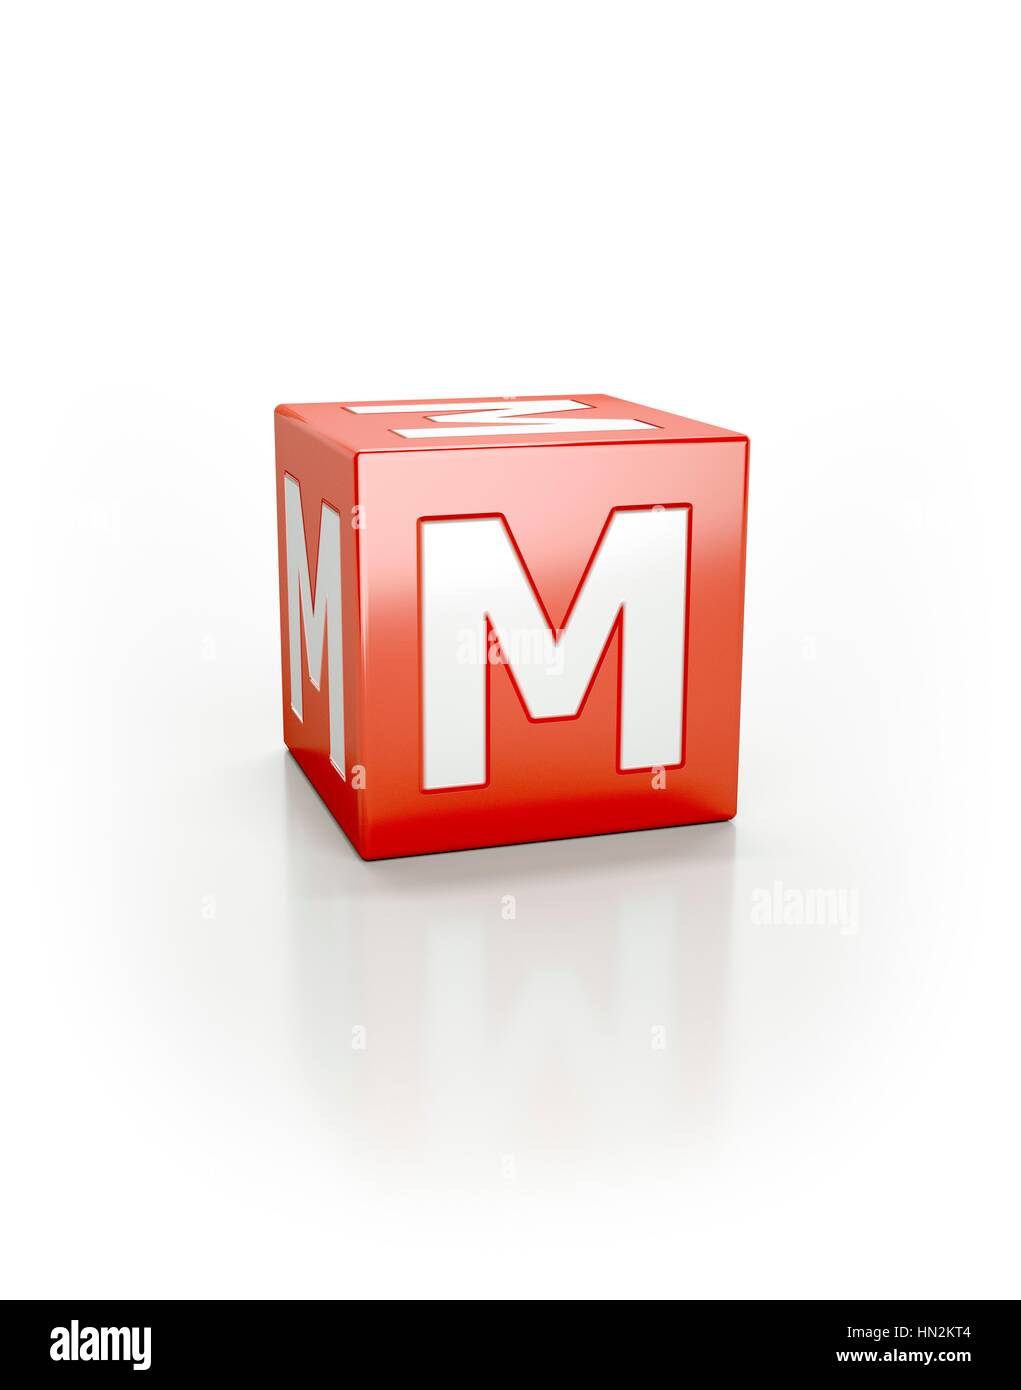 Cubo rojo con la letra M Fotografía de stock - Alamy